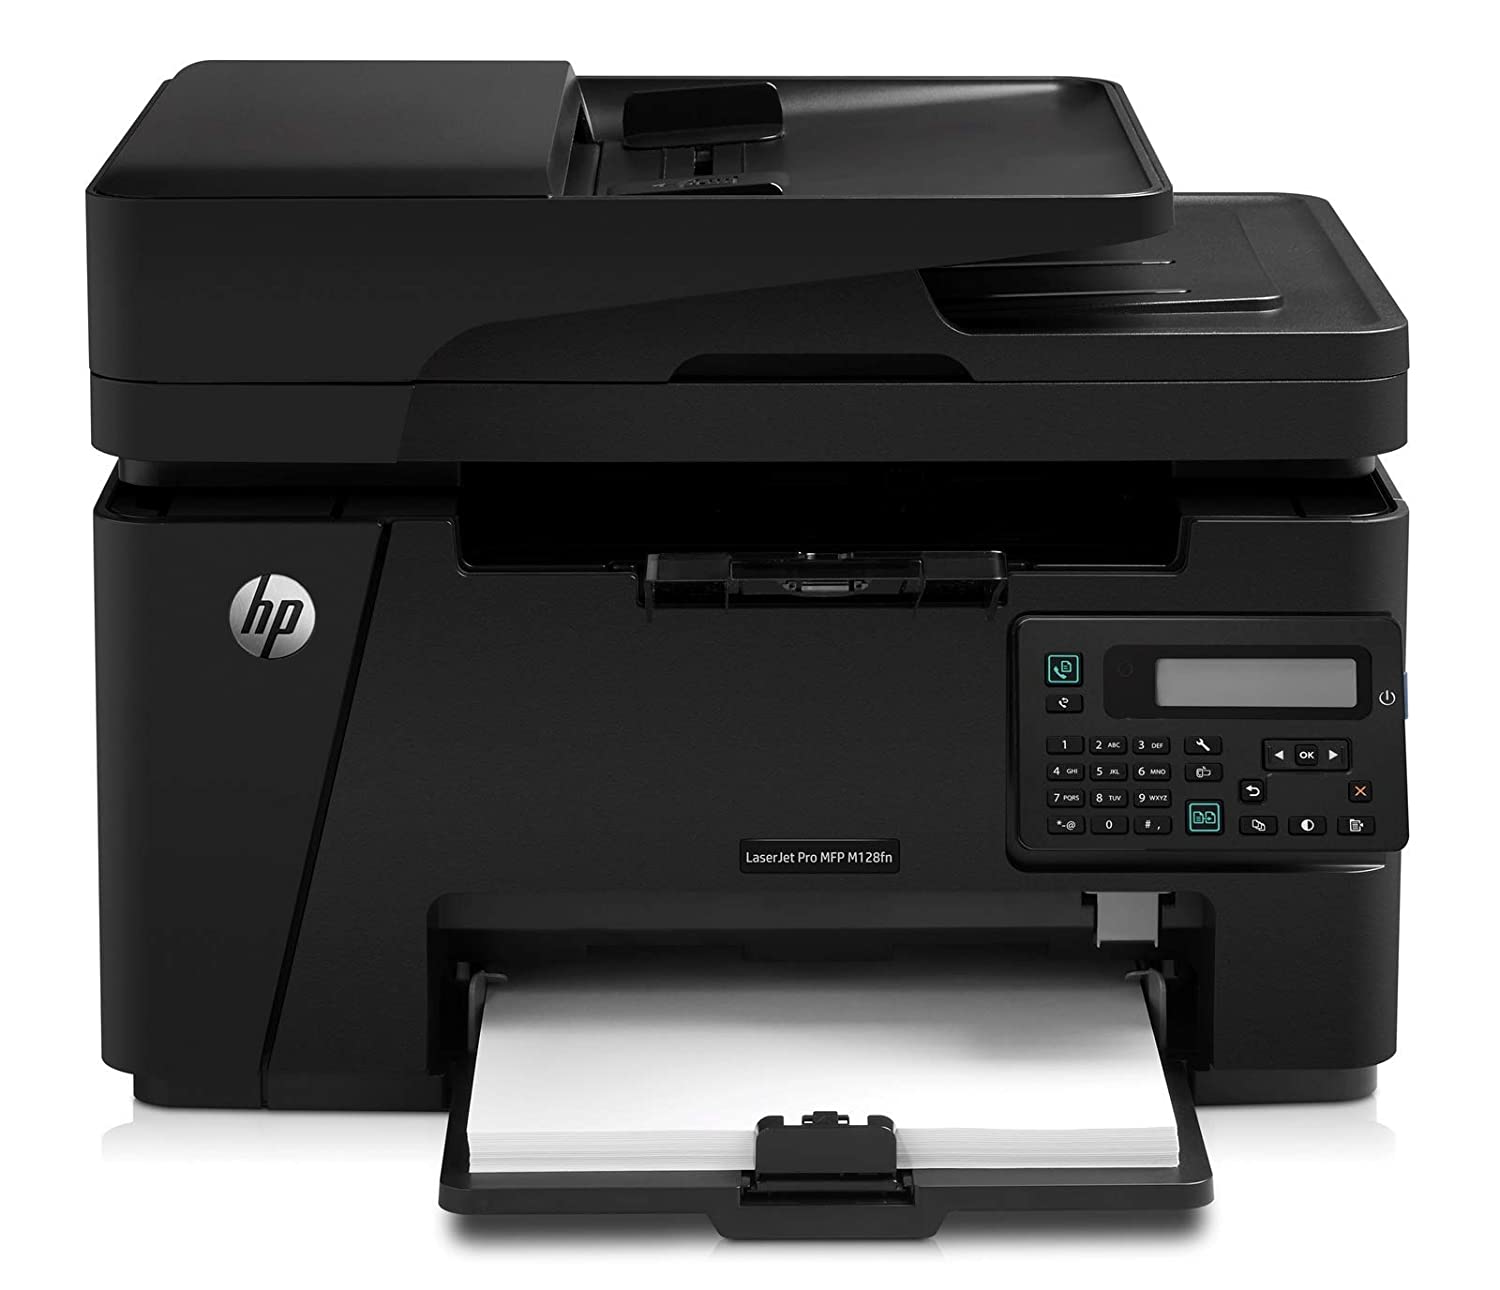 HP MF 128FN printer